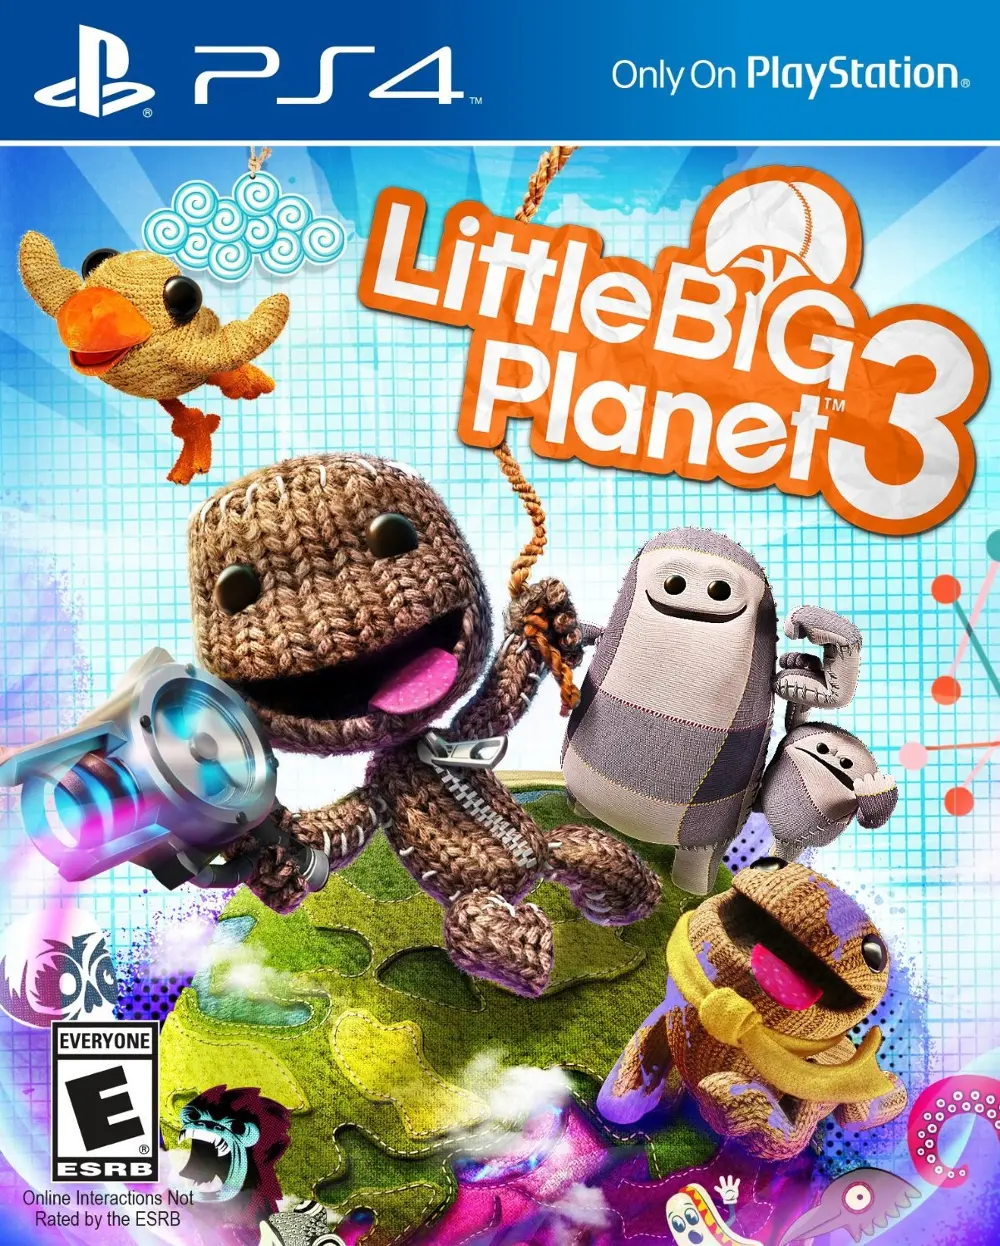 PS4/LITTLE_BIG_PLNT3 Little Big Planet 3 - PS4-1